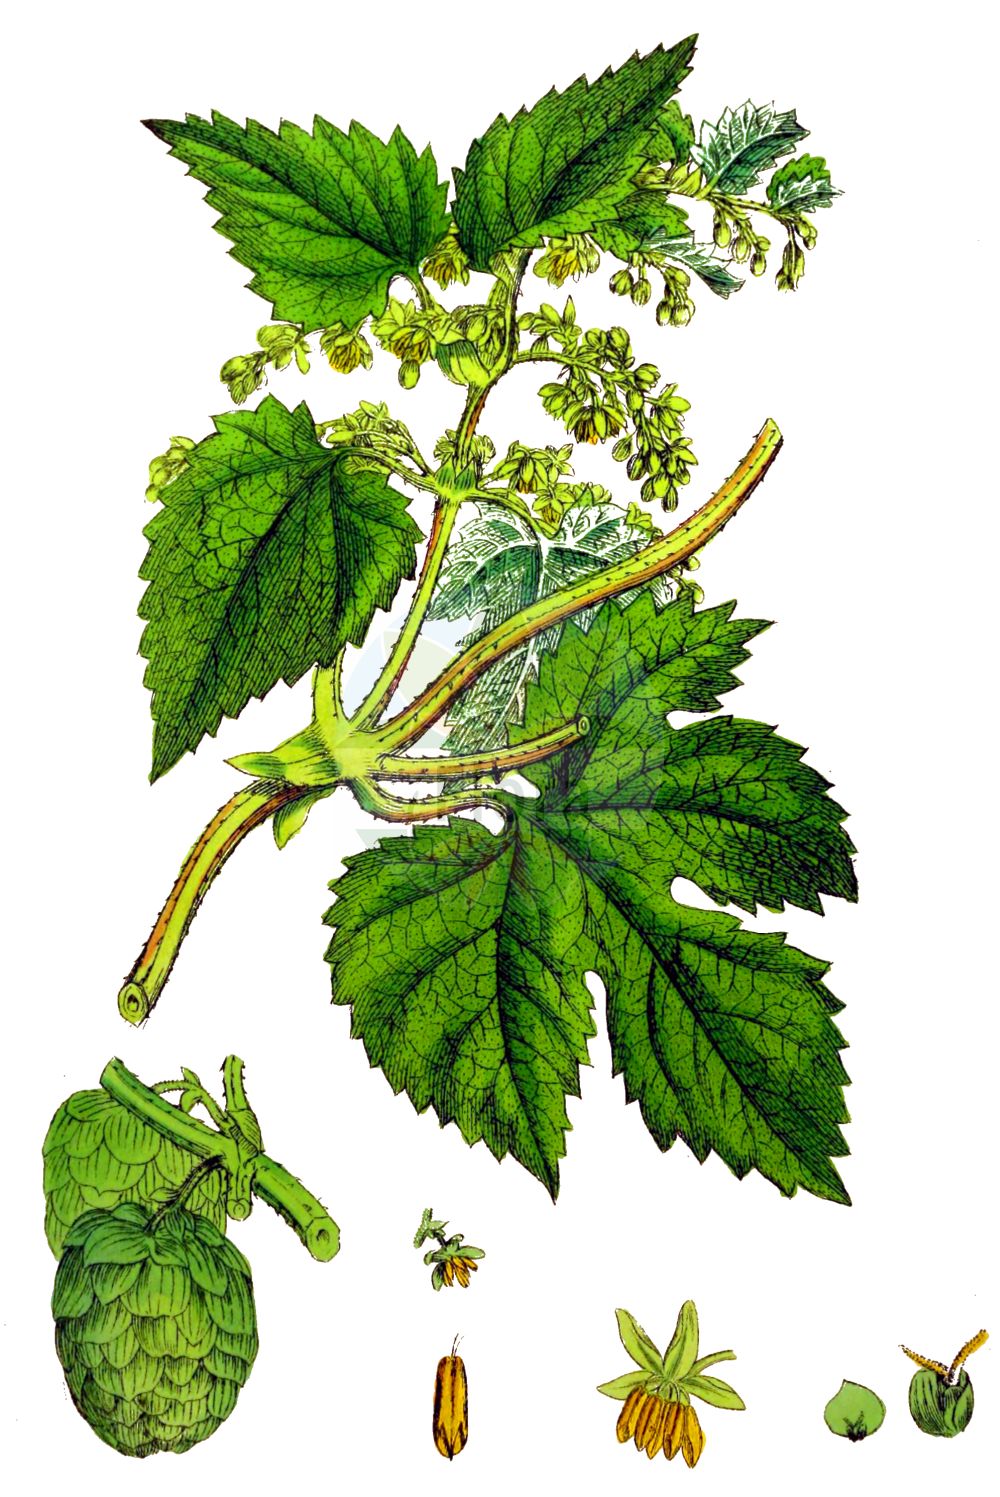 Historische Abbildung von Humulus lupulus (Gewöhnlicher Hopfen - Hop). Das Bild zeigt Blatt, Bluete, Frucht und Same. ---- Historical Drawing of Humulus lupulus (Gewöhnlicher Hopfen - Hop). The image is showing leaf, flower, fruit and seed.(Humulus lupulus,Gewöhnlicher Hopfen,Hop,Humulus lupulus,Gewoehnlicher Hopfen,Hop,Common Hop,Humulus,Hopfen,Hop,Cannabaceae,Hanfgewächse,Hemp family,Blatt,Bluete,Frucht,Same,leaf,flower,fruit,seed,Sowerby (1790-1813))